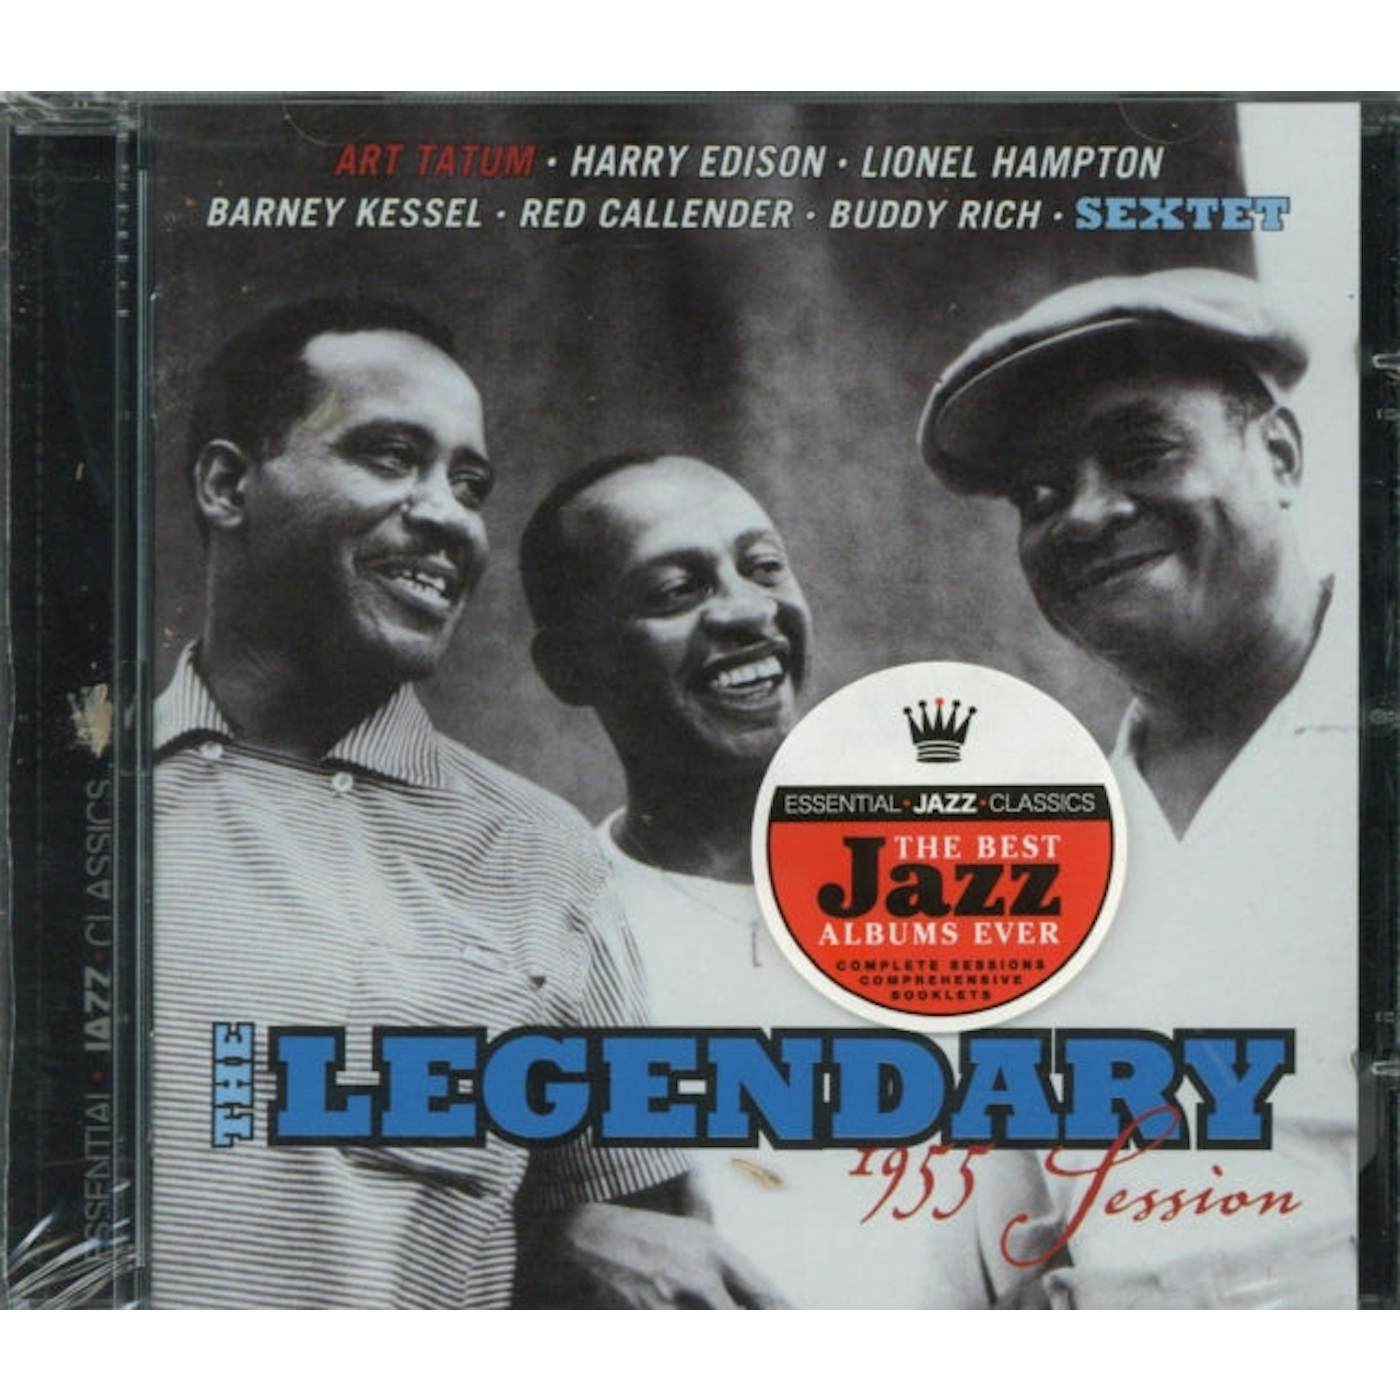 Art Tatum CD - The Legendary 19 55 Session